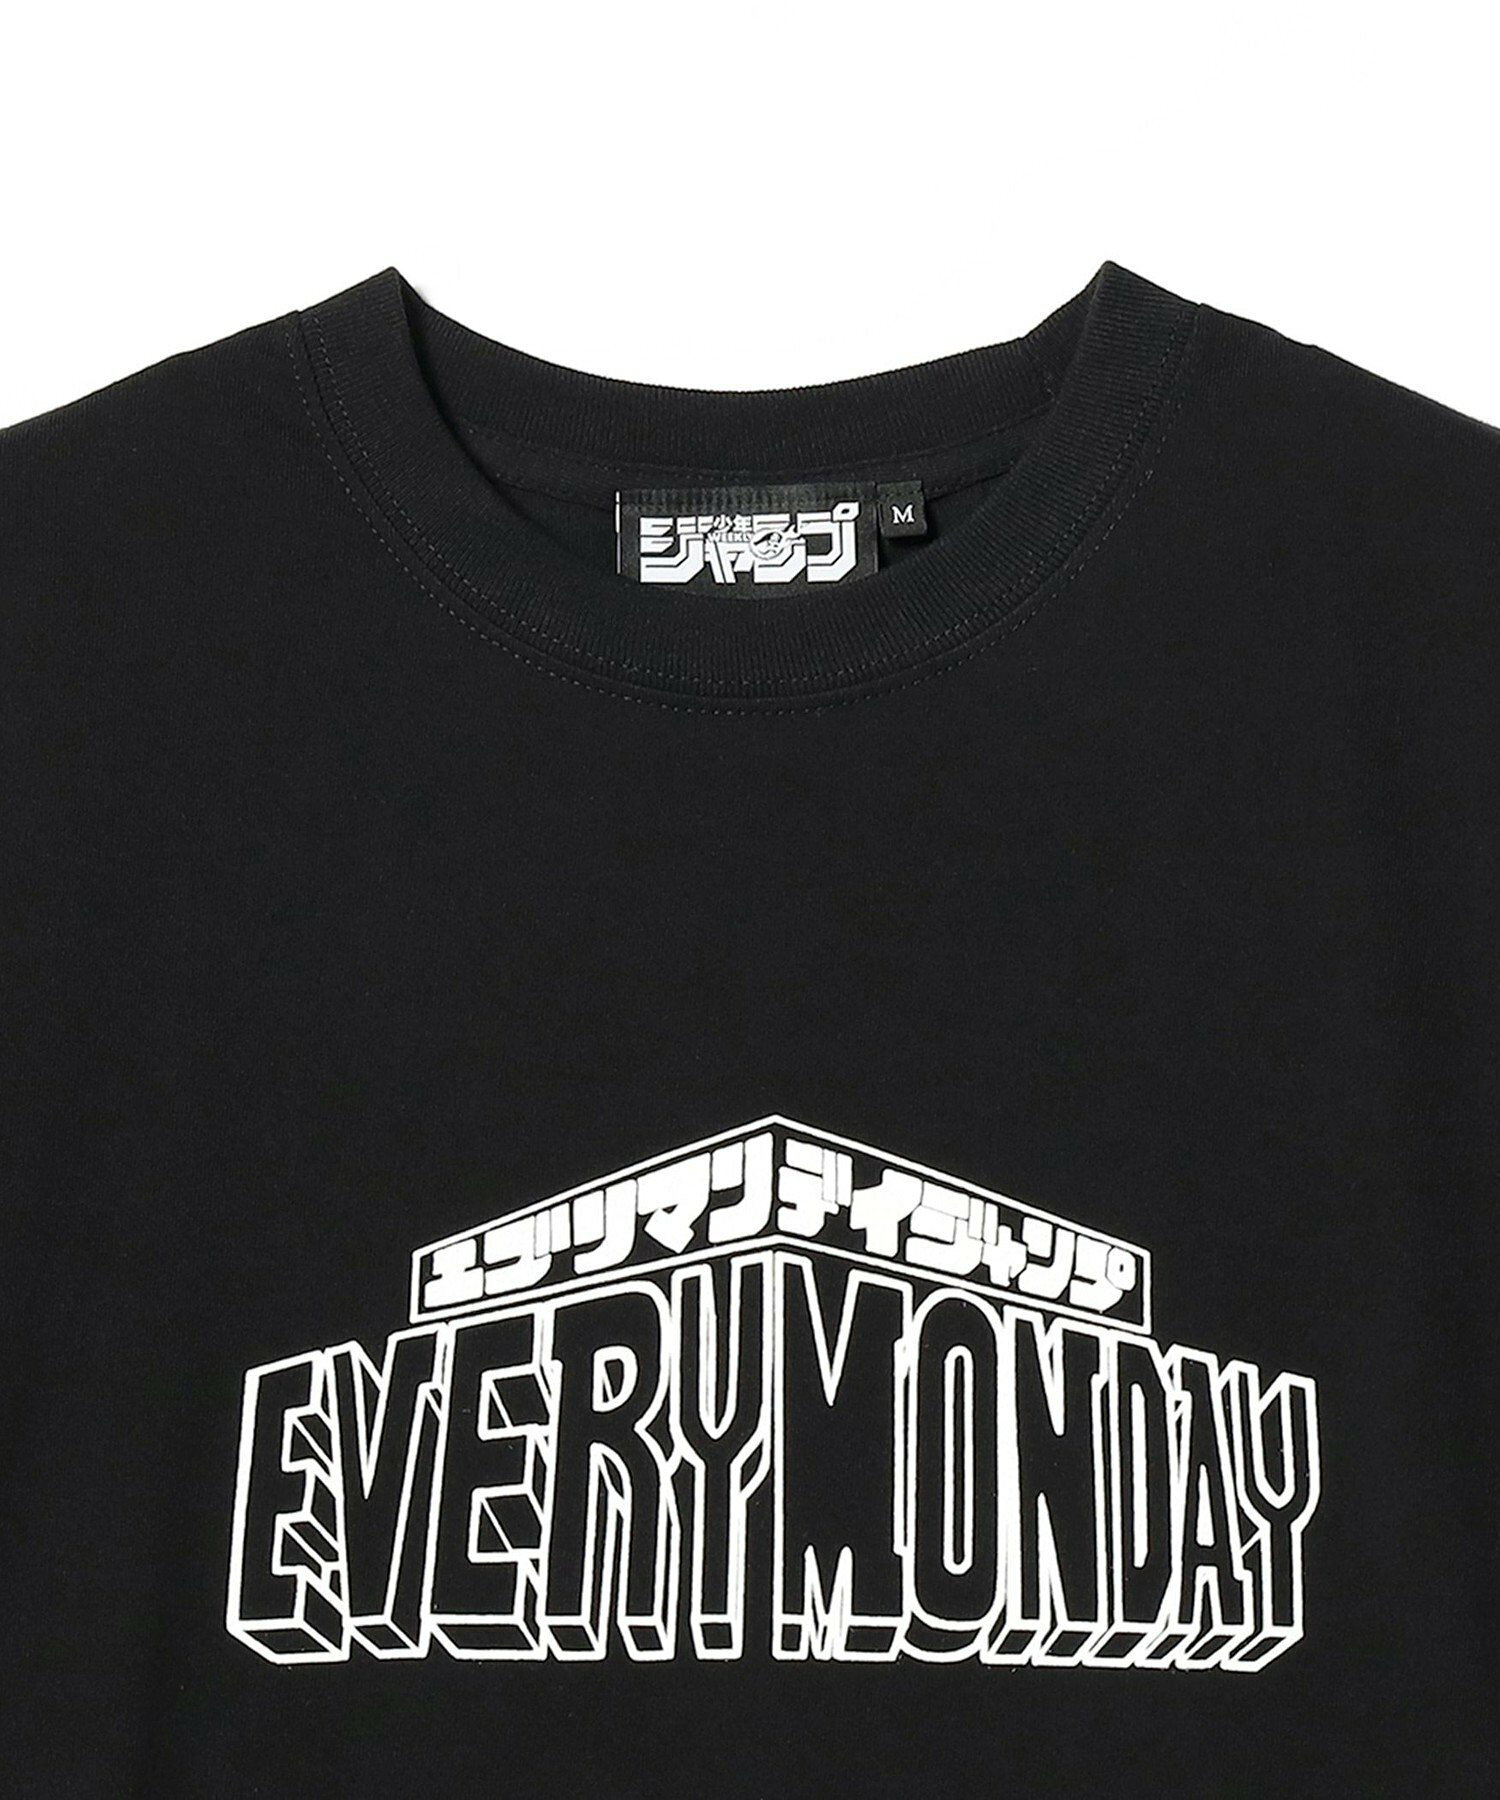 「週刊少年ジャンプ」* ビームス / 僕のヒーローアカデミア "EVERY MONDAY" Tシャツ